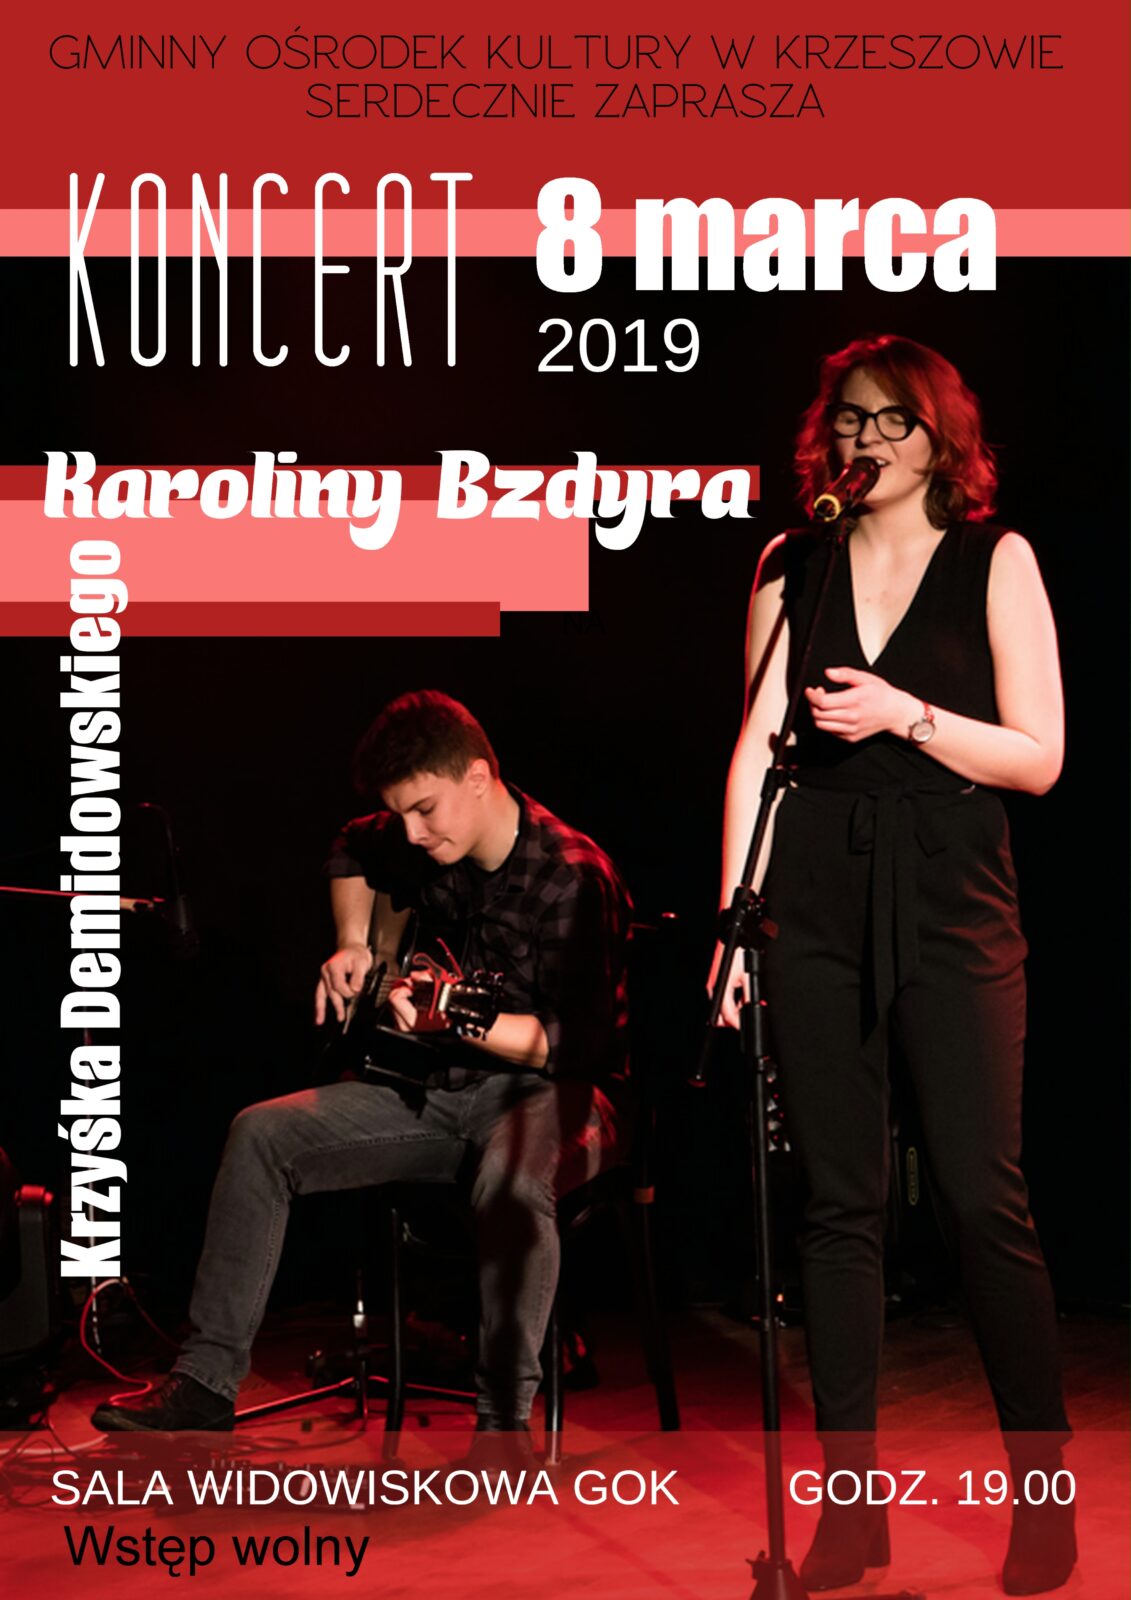 Koncert Karoliny Bzdyra i Krzyśka Demidowskiego – 8 marca 2019 r.